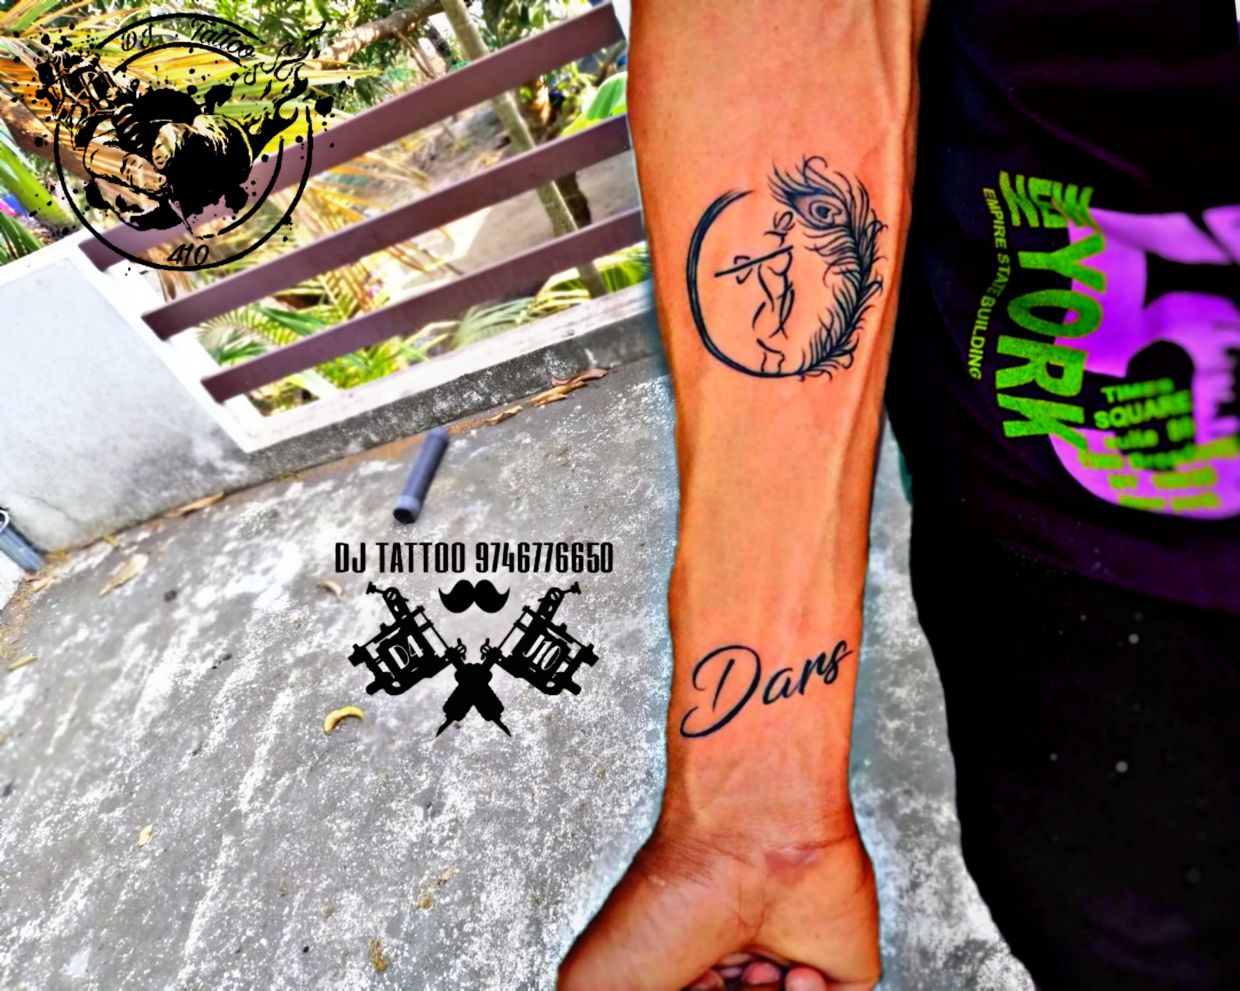 Tattoo music dj  Tattoos Music tattoos Body tattoos